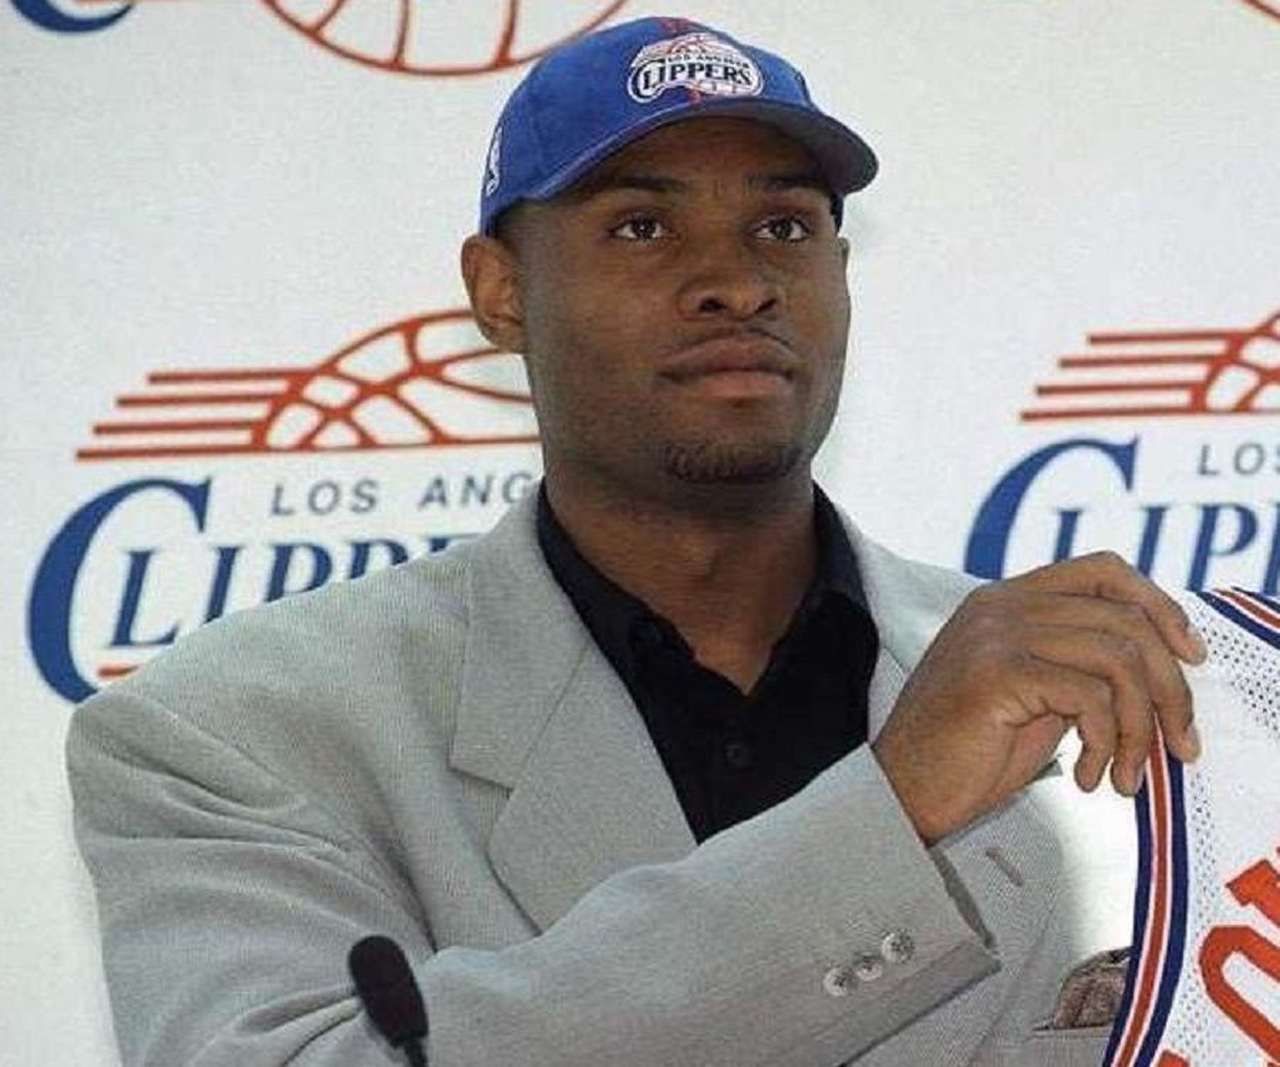 11- Michael Olowokandi – 500 jogos, 8.0 pontos, 6.8 rebotes, 1.4 bloqueio, 43.5 FG%, 59.7 FT%. O ex-pivô só foi um cara grande que teve a sorte de ficar na NBA por muitos anos. Primeira escolha do Los Angeles Clippers em 1998, ele ficou na equipe pelos primeiros cinco anos de sua carreira